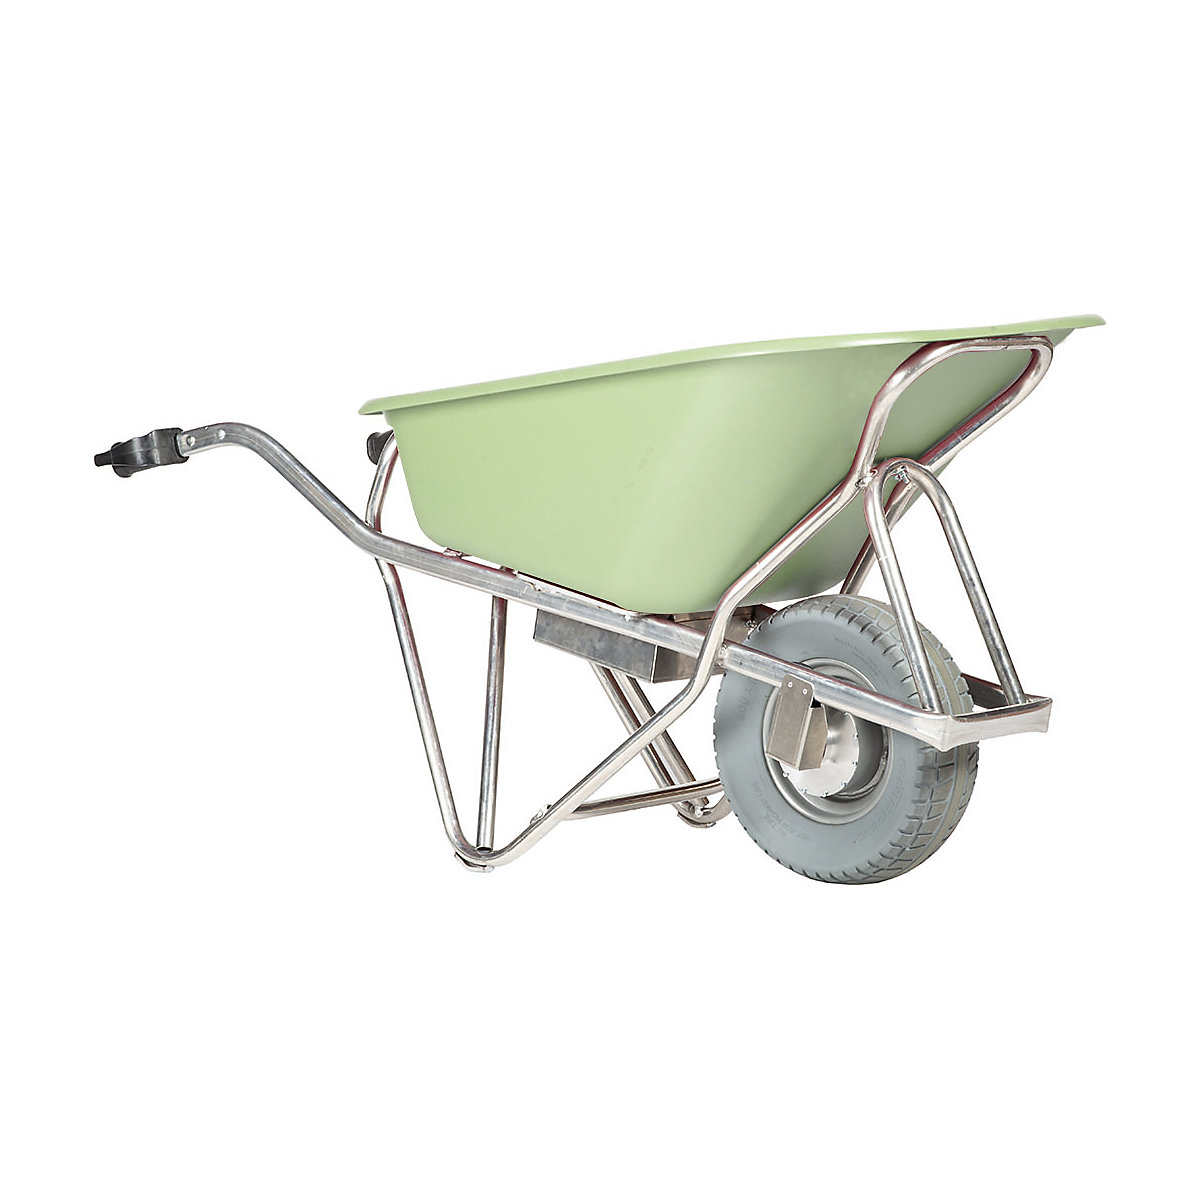 PROFI-MAX electric wheelbarrow – MATADOR, 90 l HDPE tray, green-1